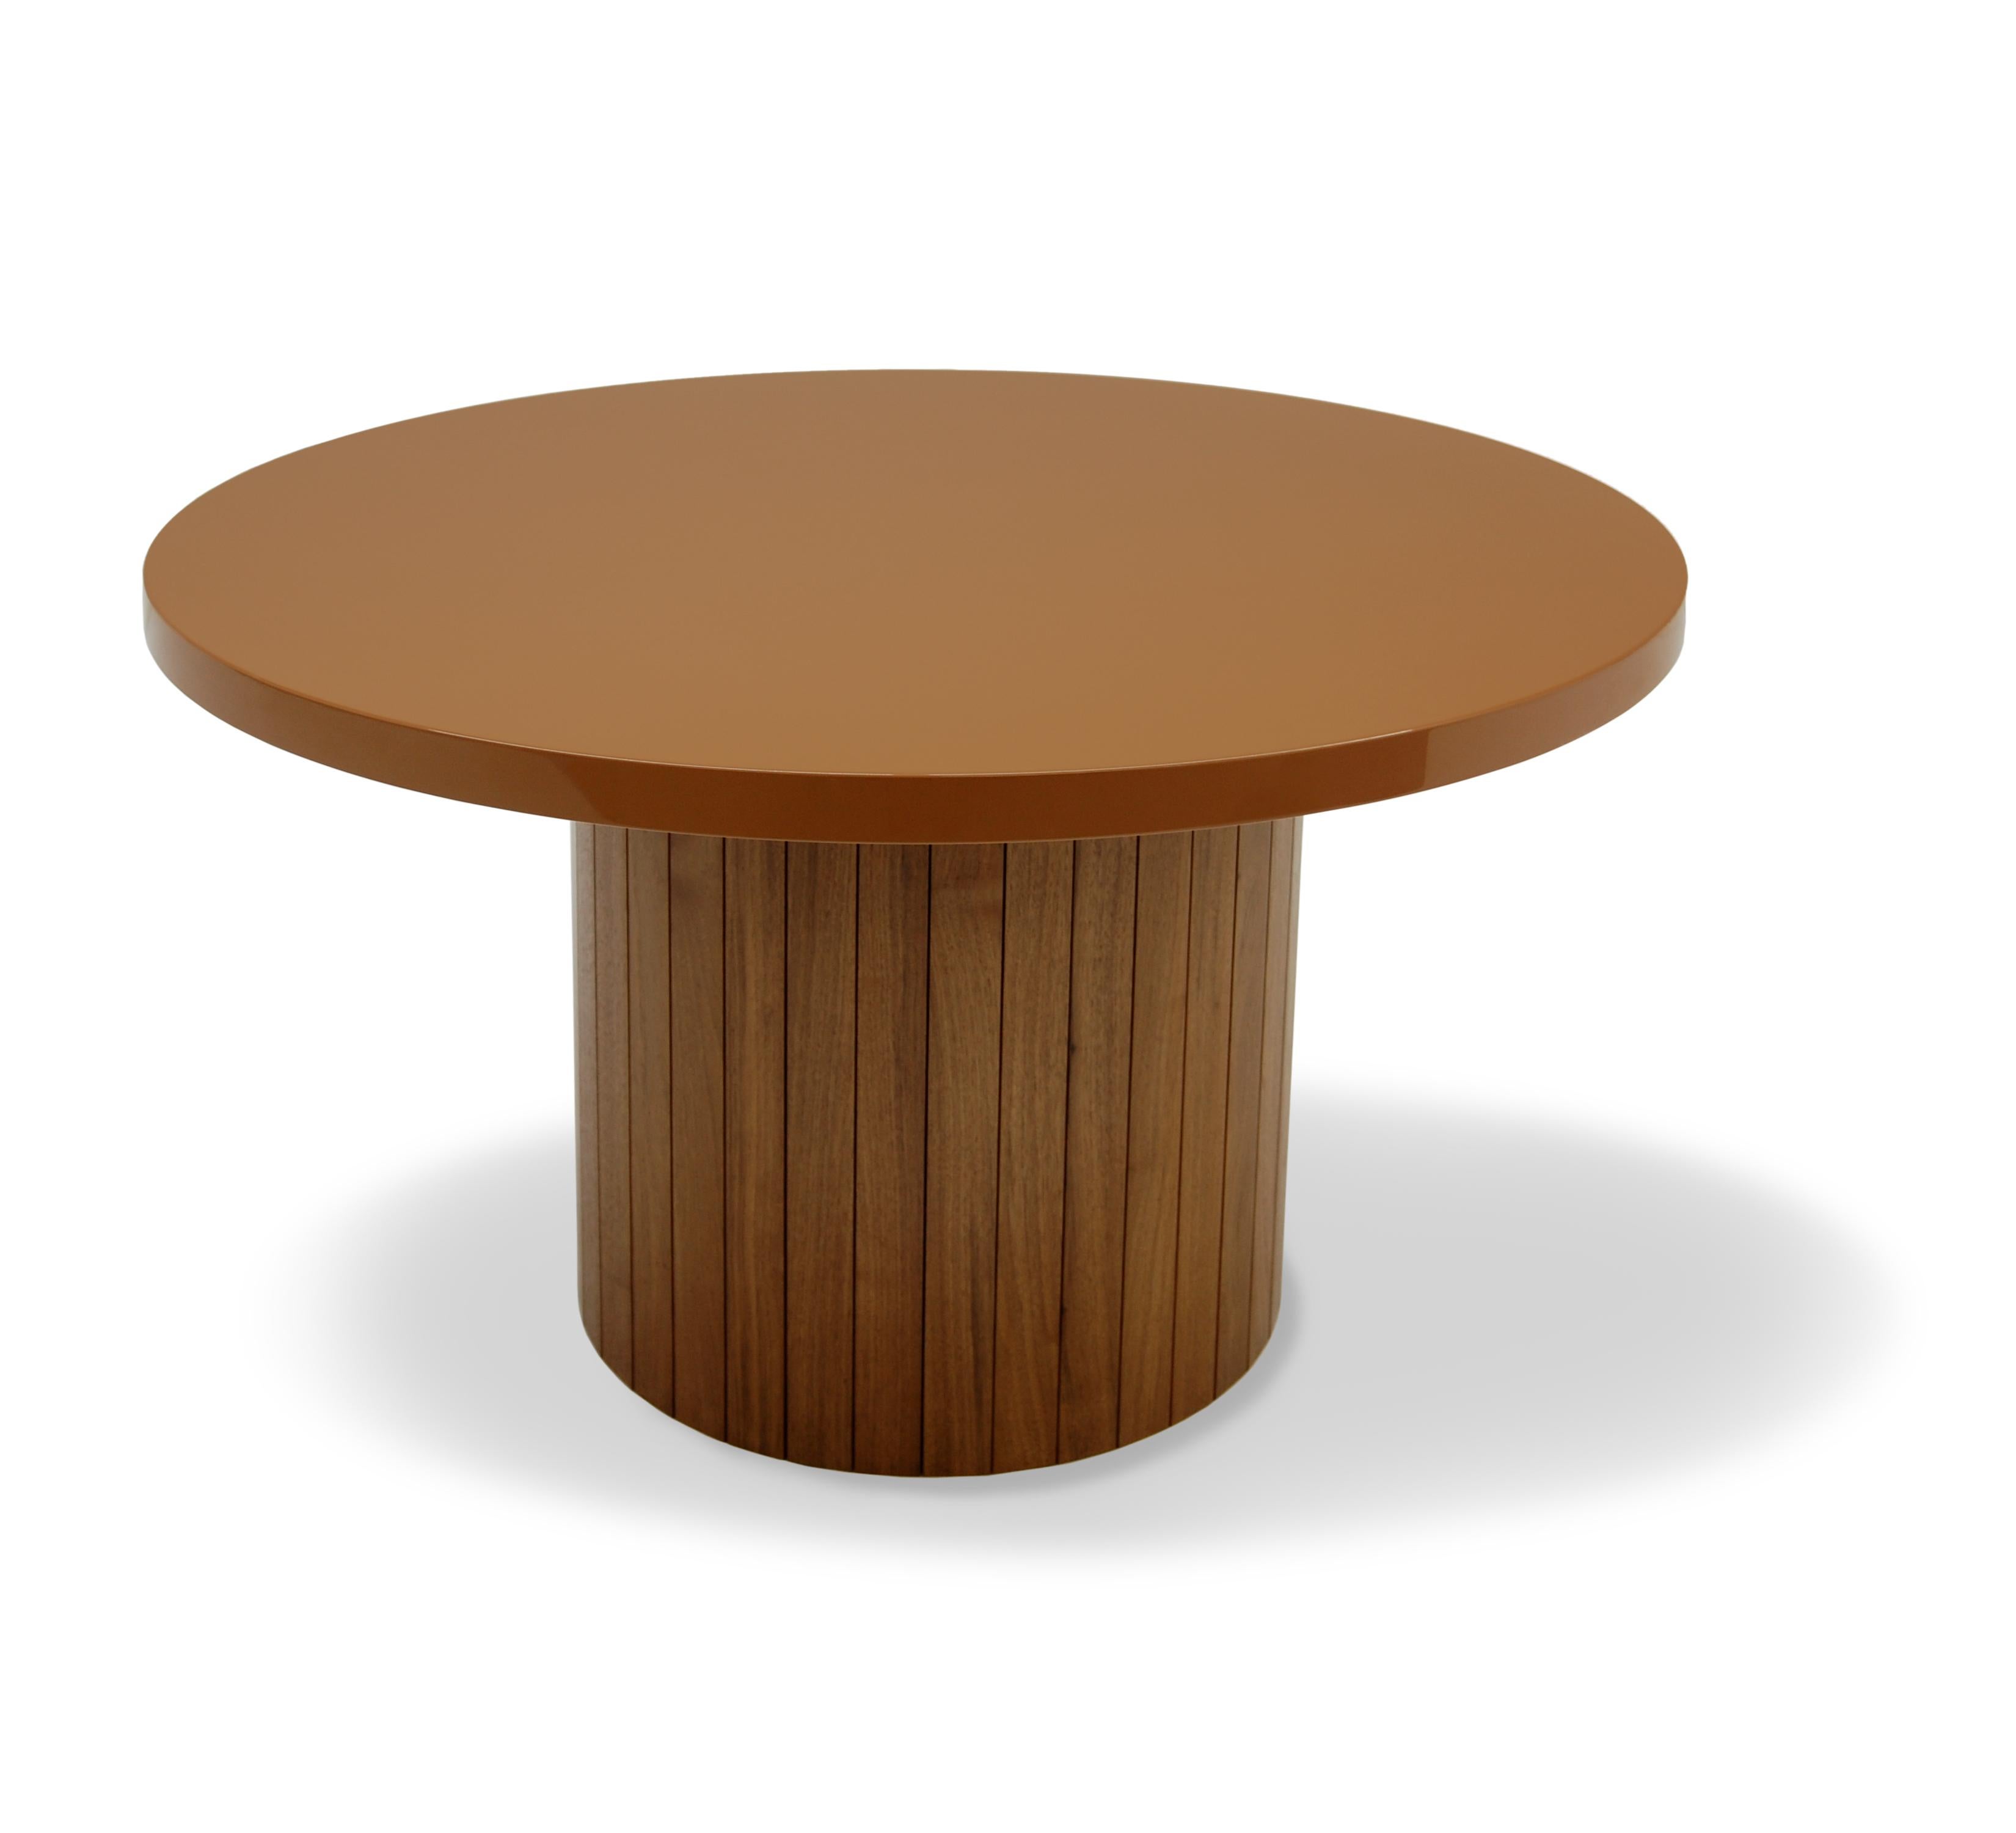 Le mélange de bois et de laque de la Plank Table rappelle une autre époque, où la valeur et la distinction se mesuraient à l'artisanat et à la simplicité. Le plateau en laque ramène cette table au milieu du 20e siècle et la combinaison des deux est